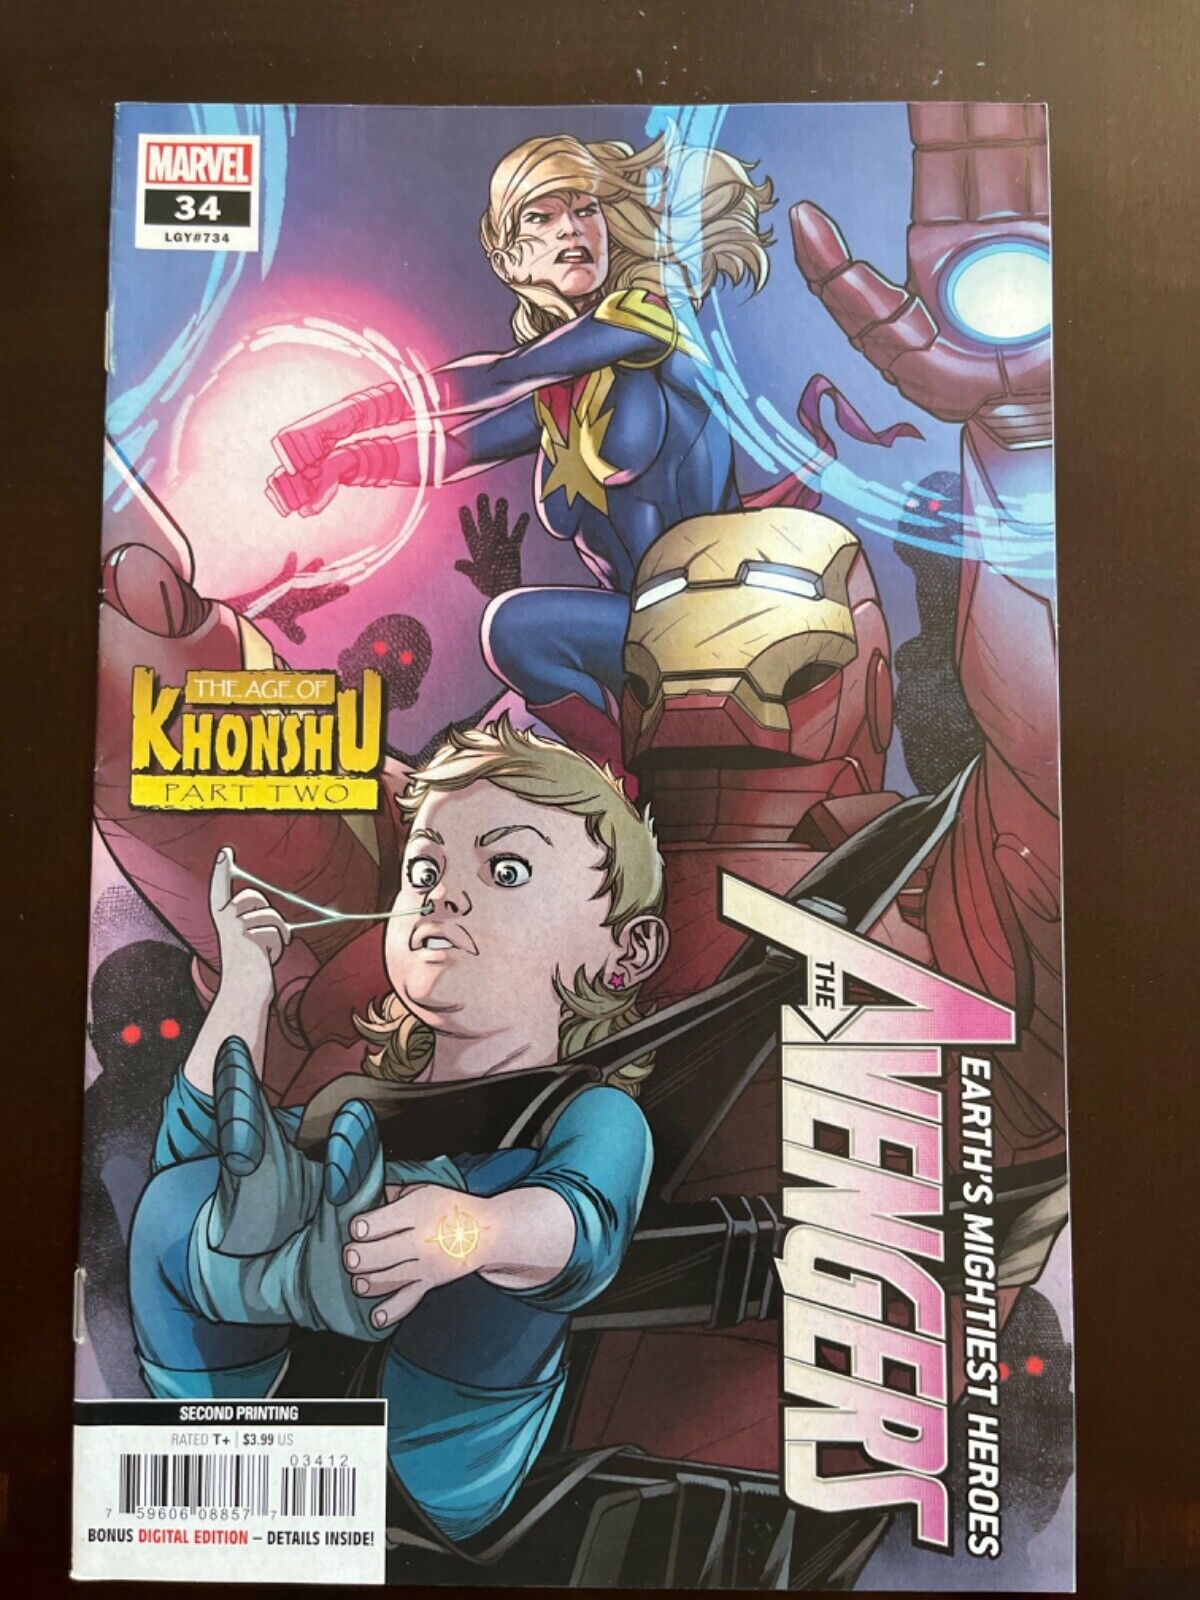 Avengers #34 Vol. 8 (Marvel, 2020) Javier Garron 2nd Printing Variant, VF